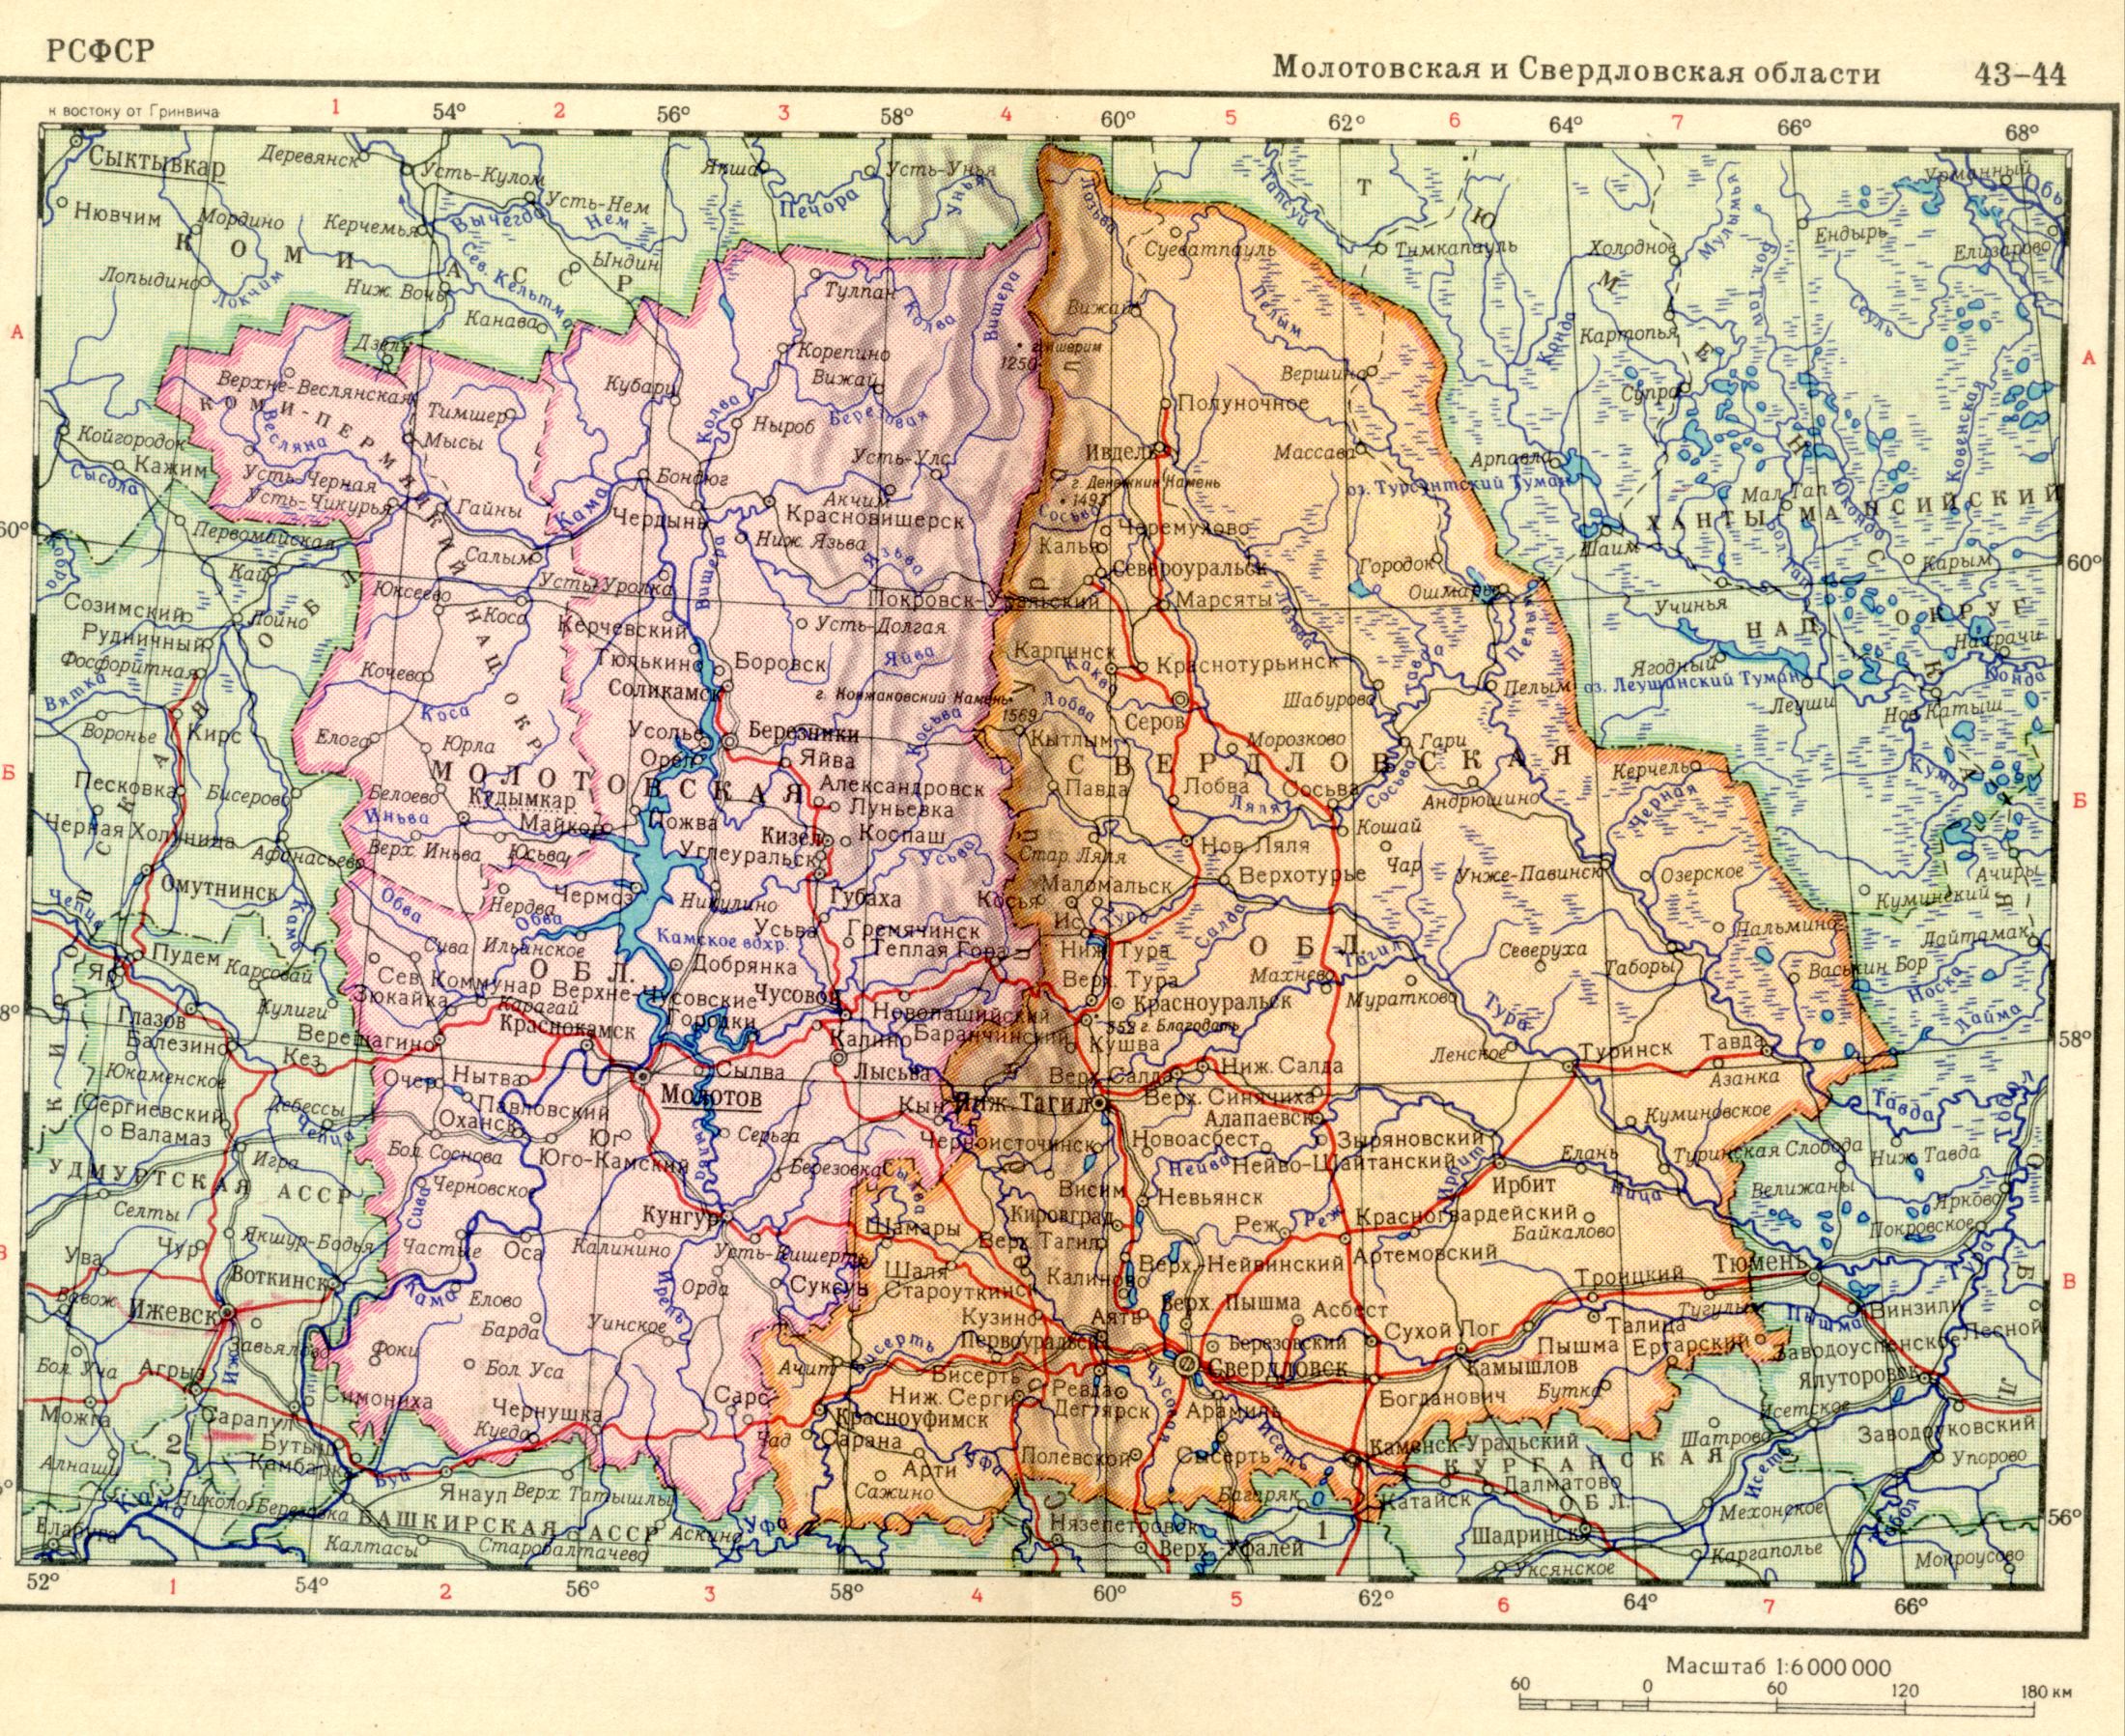 1956. La carte politique du monde. Molotov et Sverdlovsk région de la RSFSR en 1956. Télécharger une carte détaillée de Vishera